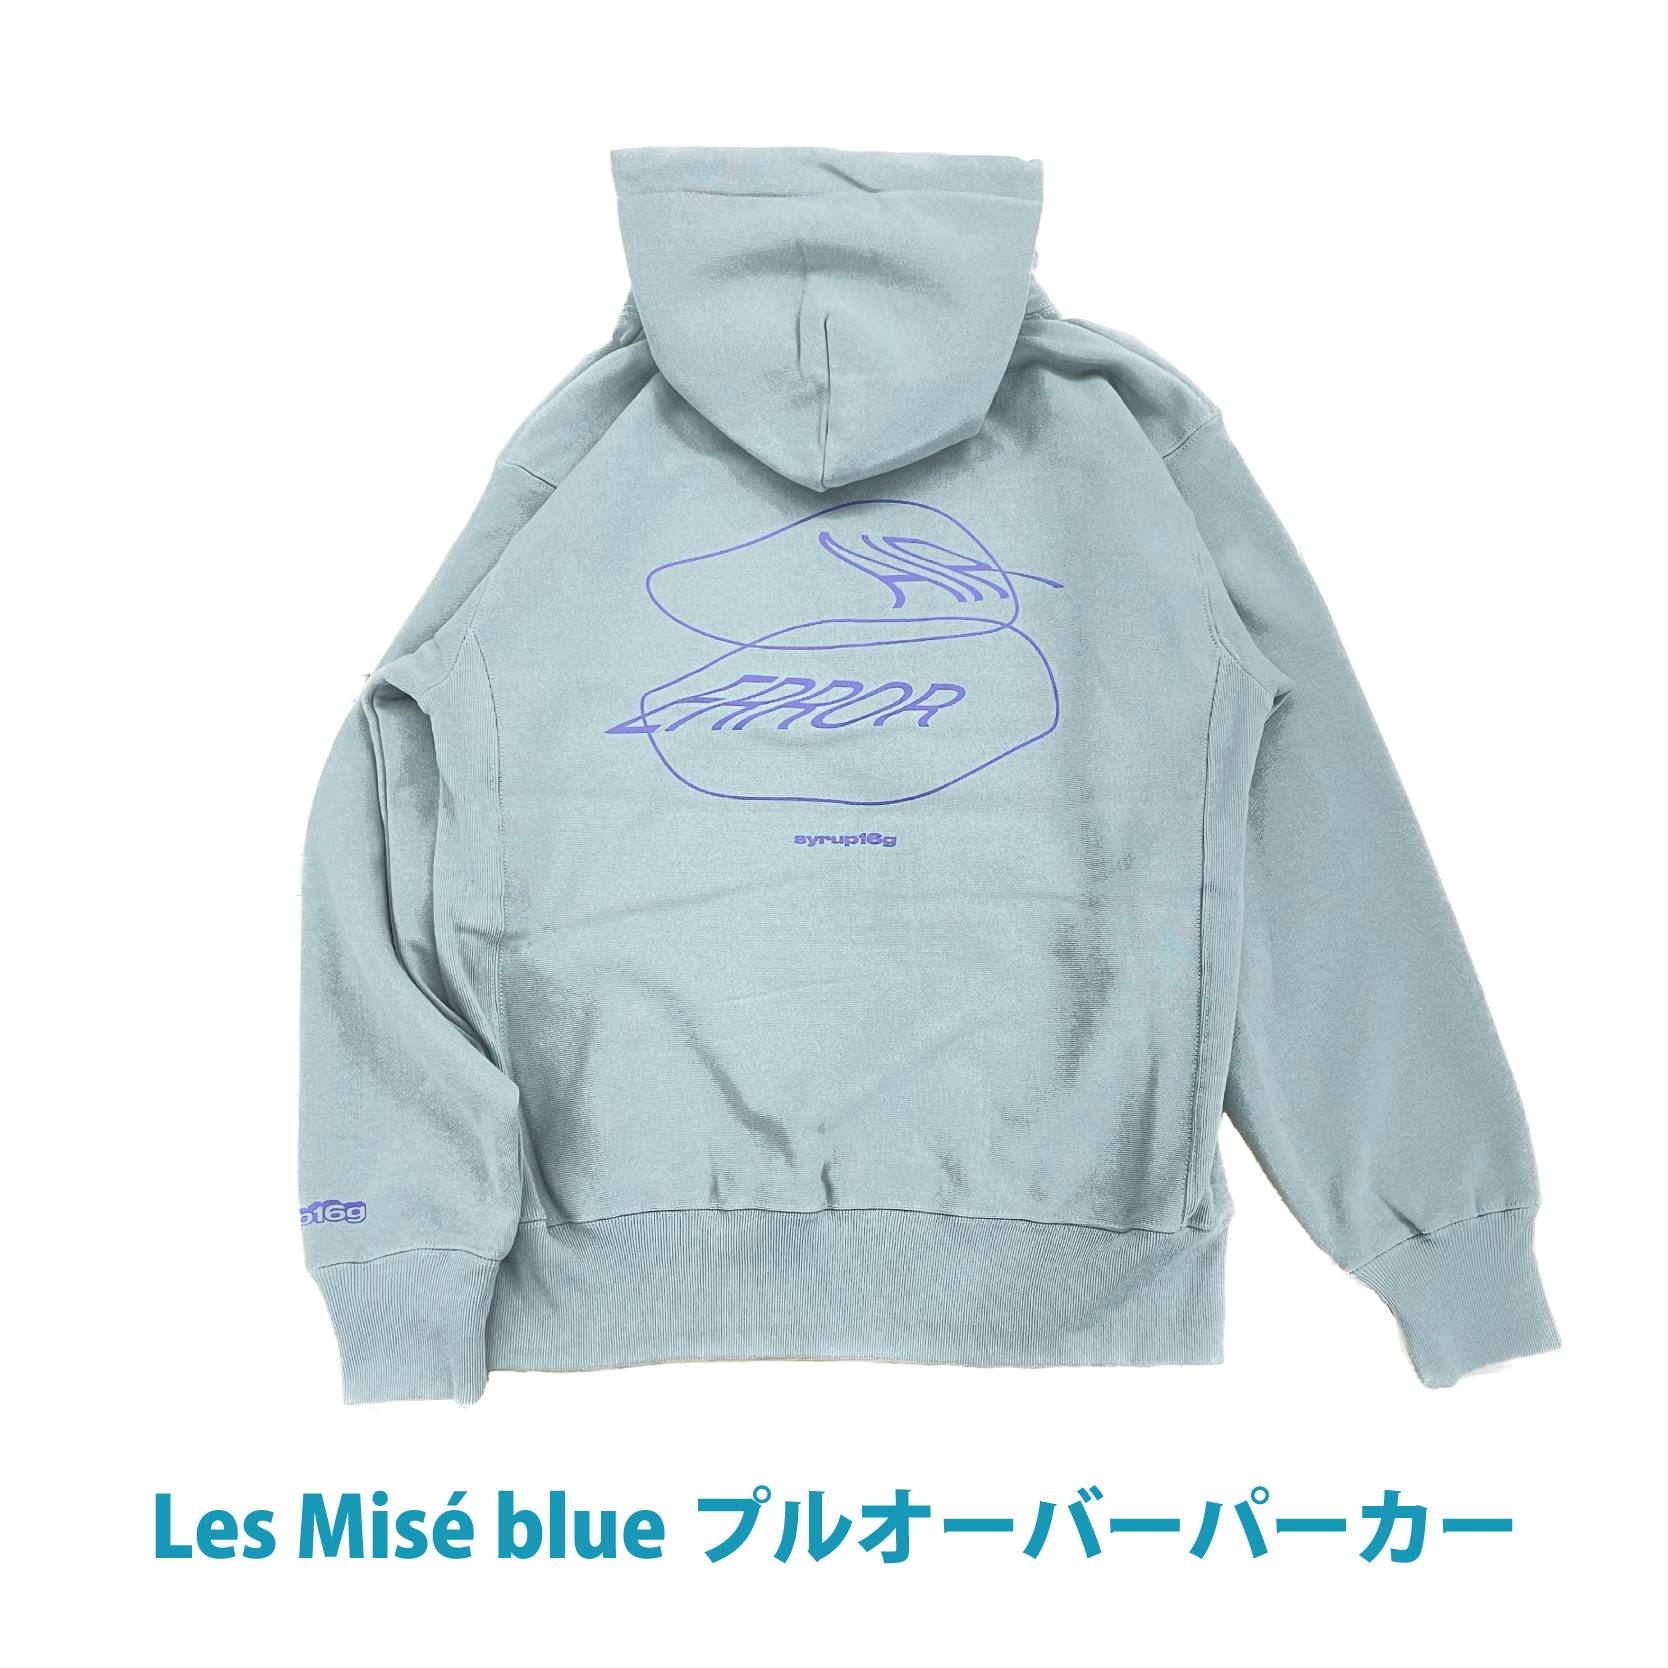 Les Misé blue プルオーバーパーカー